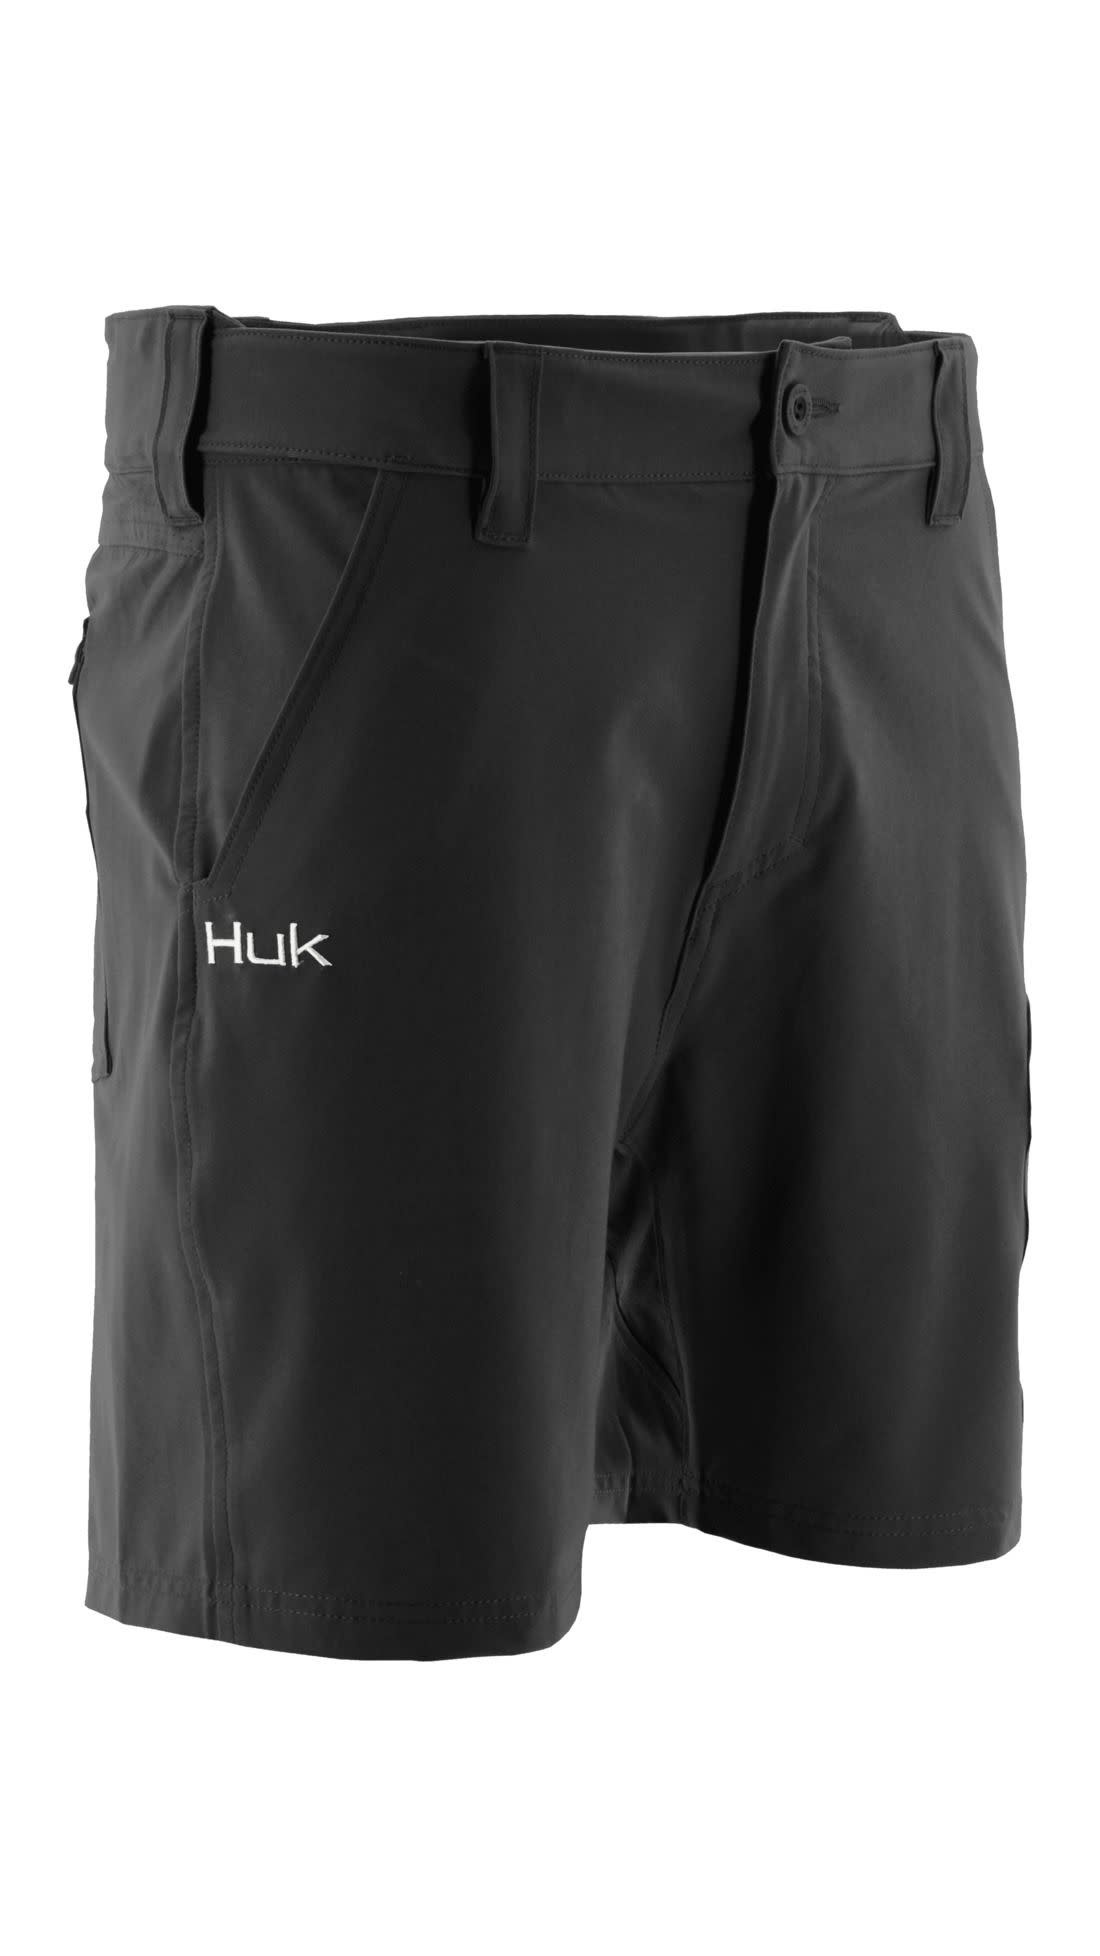 Huk Next Level Short 7 - Gagnon Sporting Goods